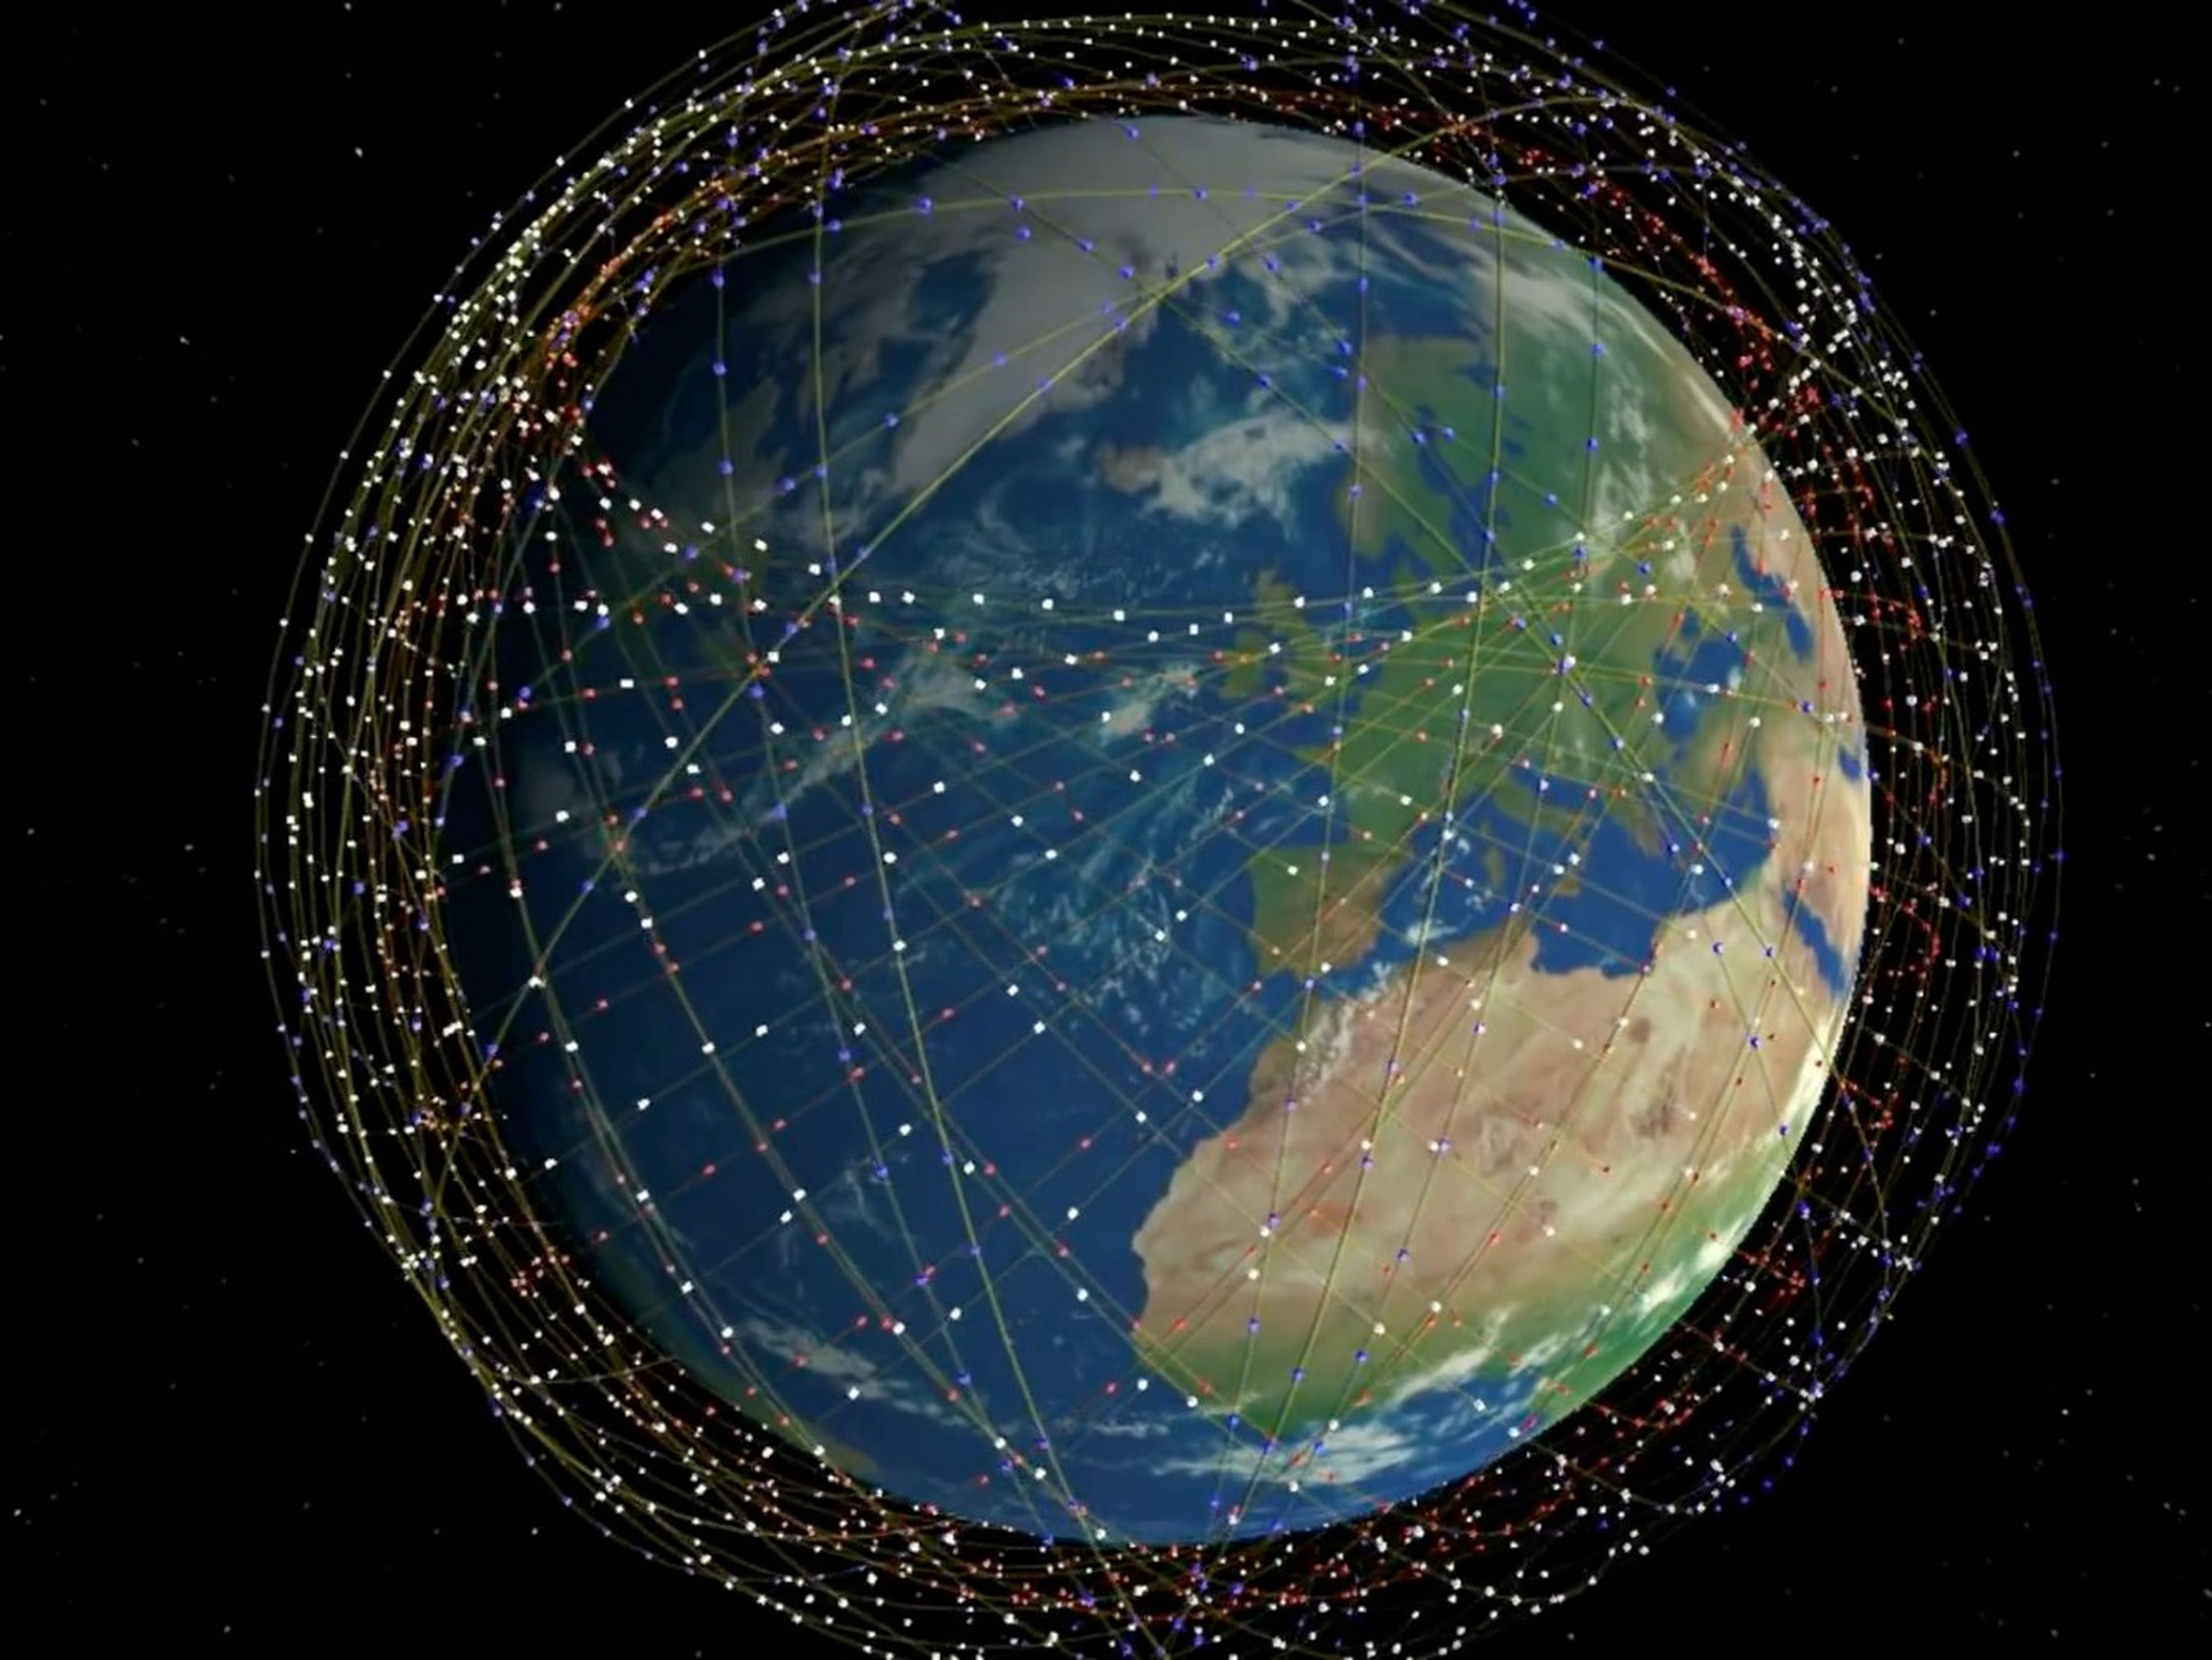 Una ilustración de Starlink, una constelación de satélites proveedores de Internet diseñados por SpaceX.